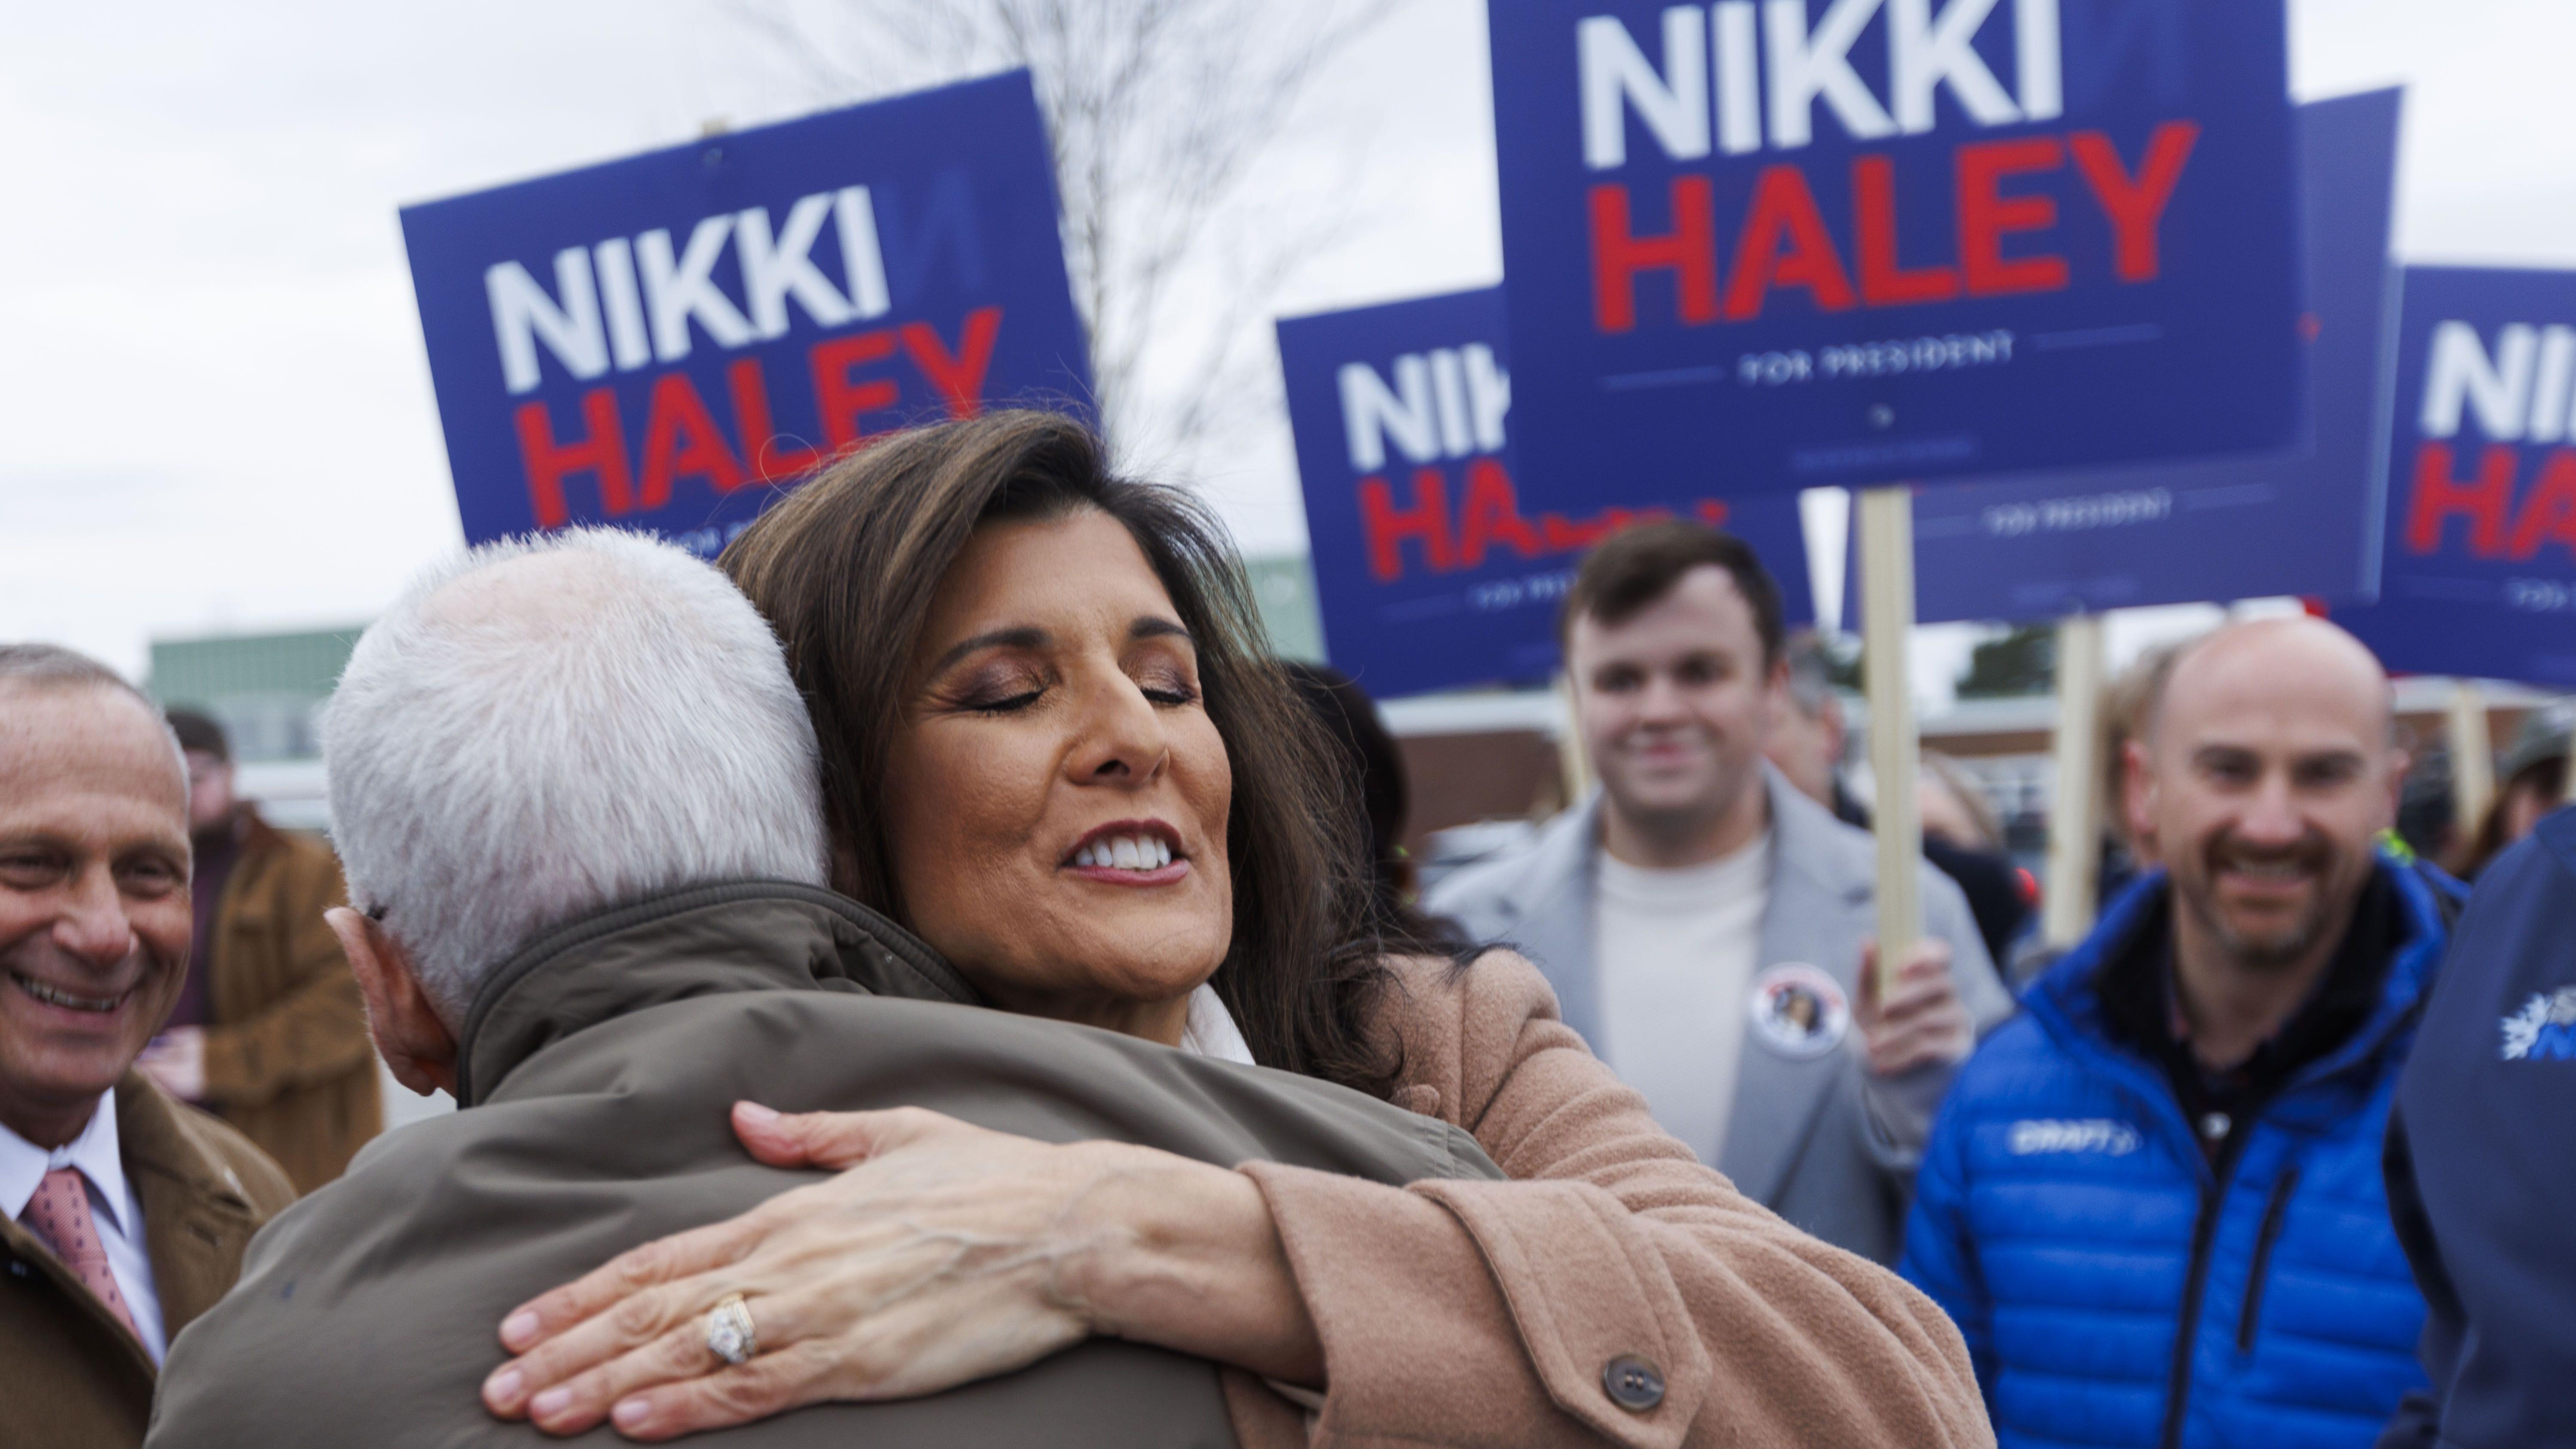 Nikki Haley abraza a un seguidor en New Hampshire